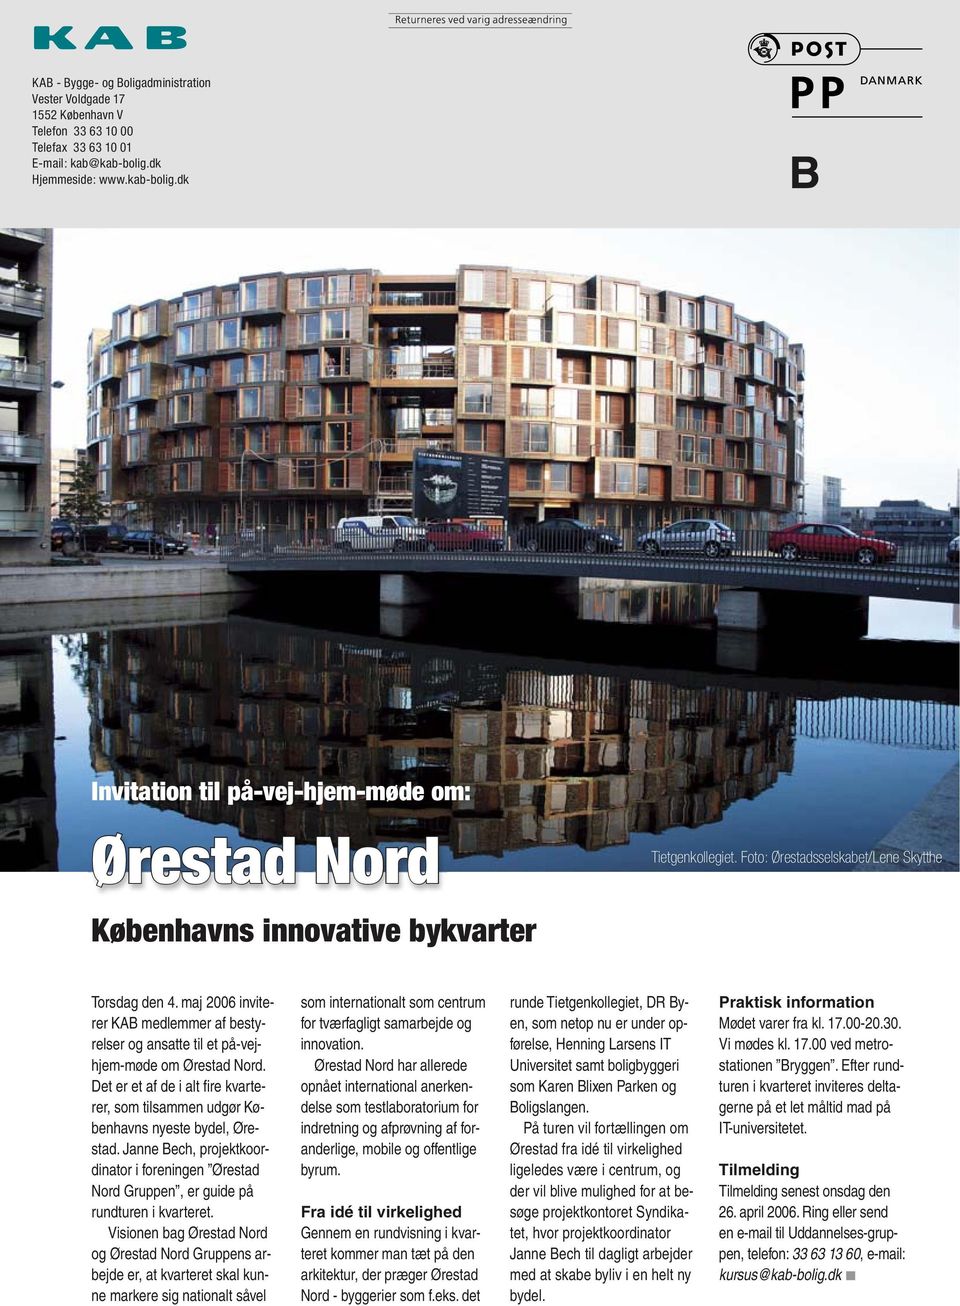 maj 2006 inviterer KAB medlemmer af bestyrelser og ansatte til et på-vejhjem-møde om Ørestad Nord. Det er et af de i alt fi re kvarterer, som tilsammen udgør Københavns nyeste bydel, Ørestad.